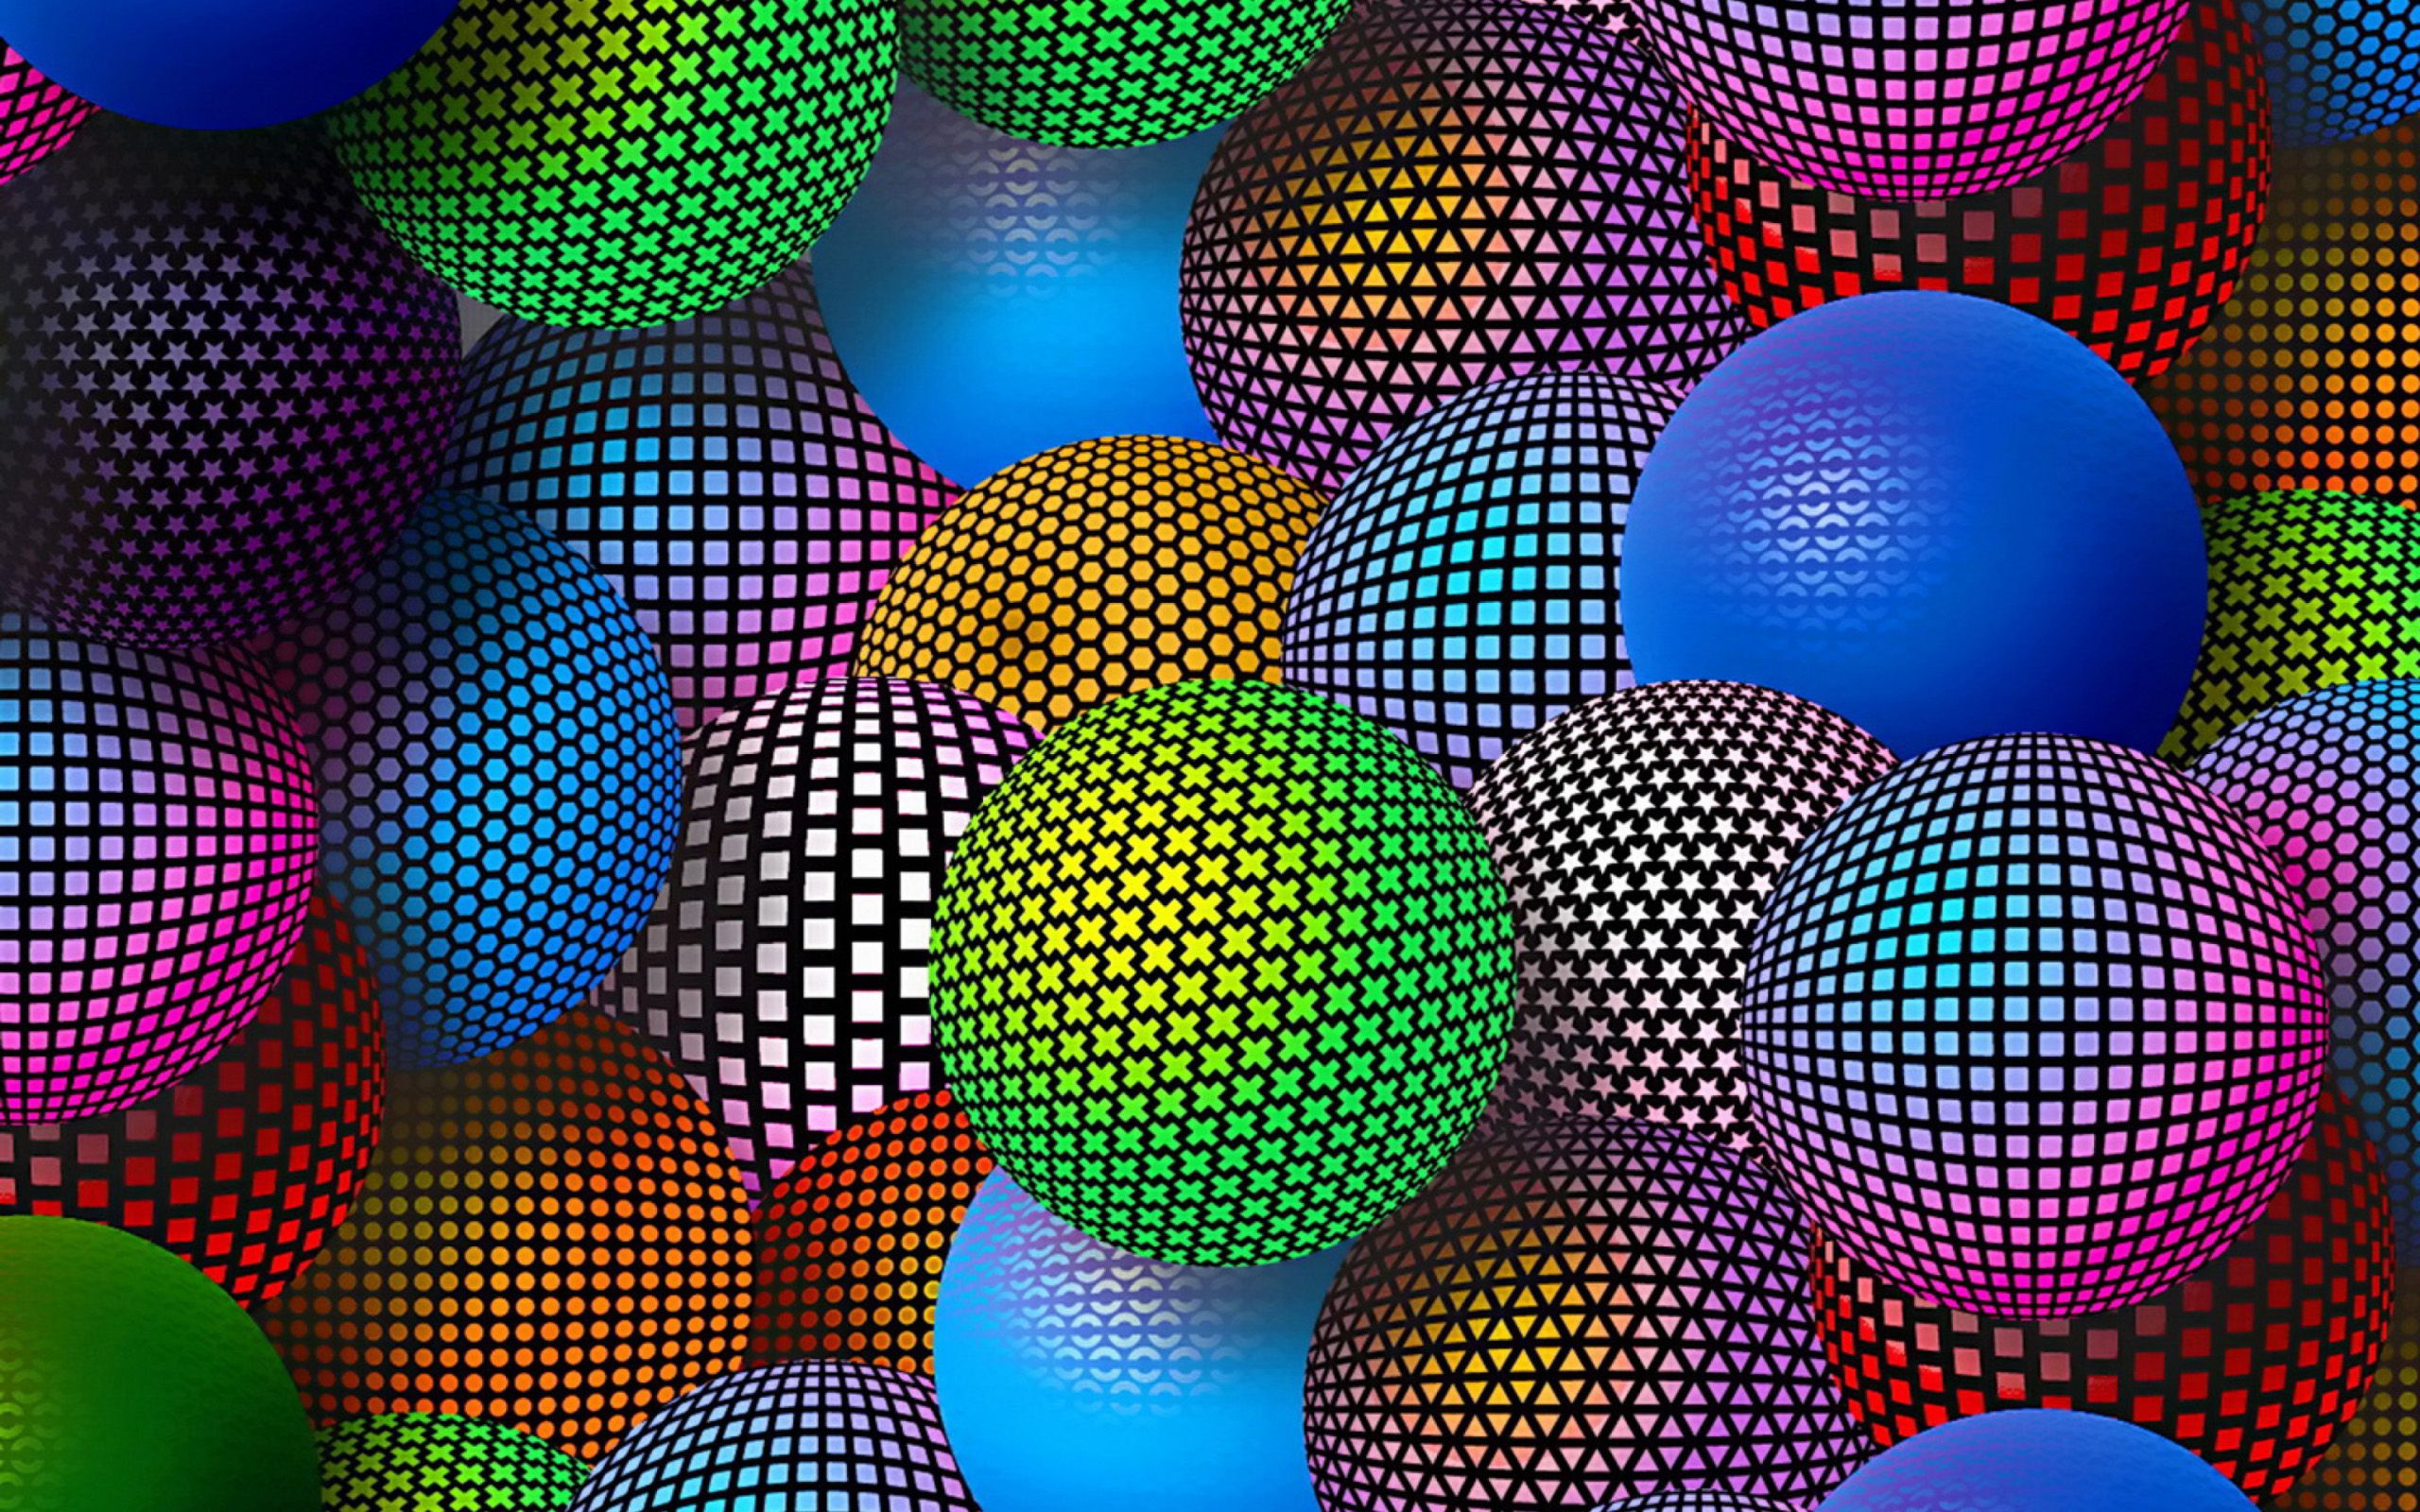 3D Balls background Image download